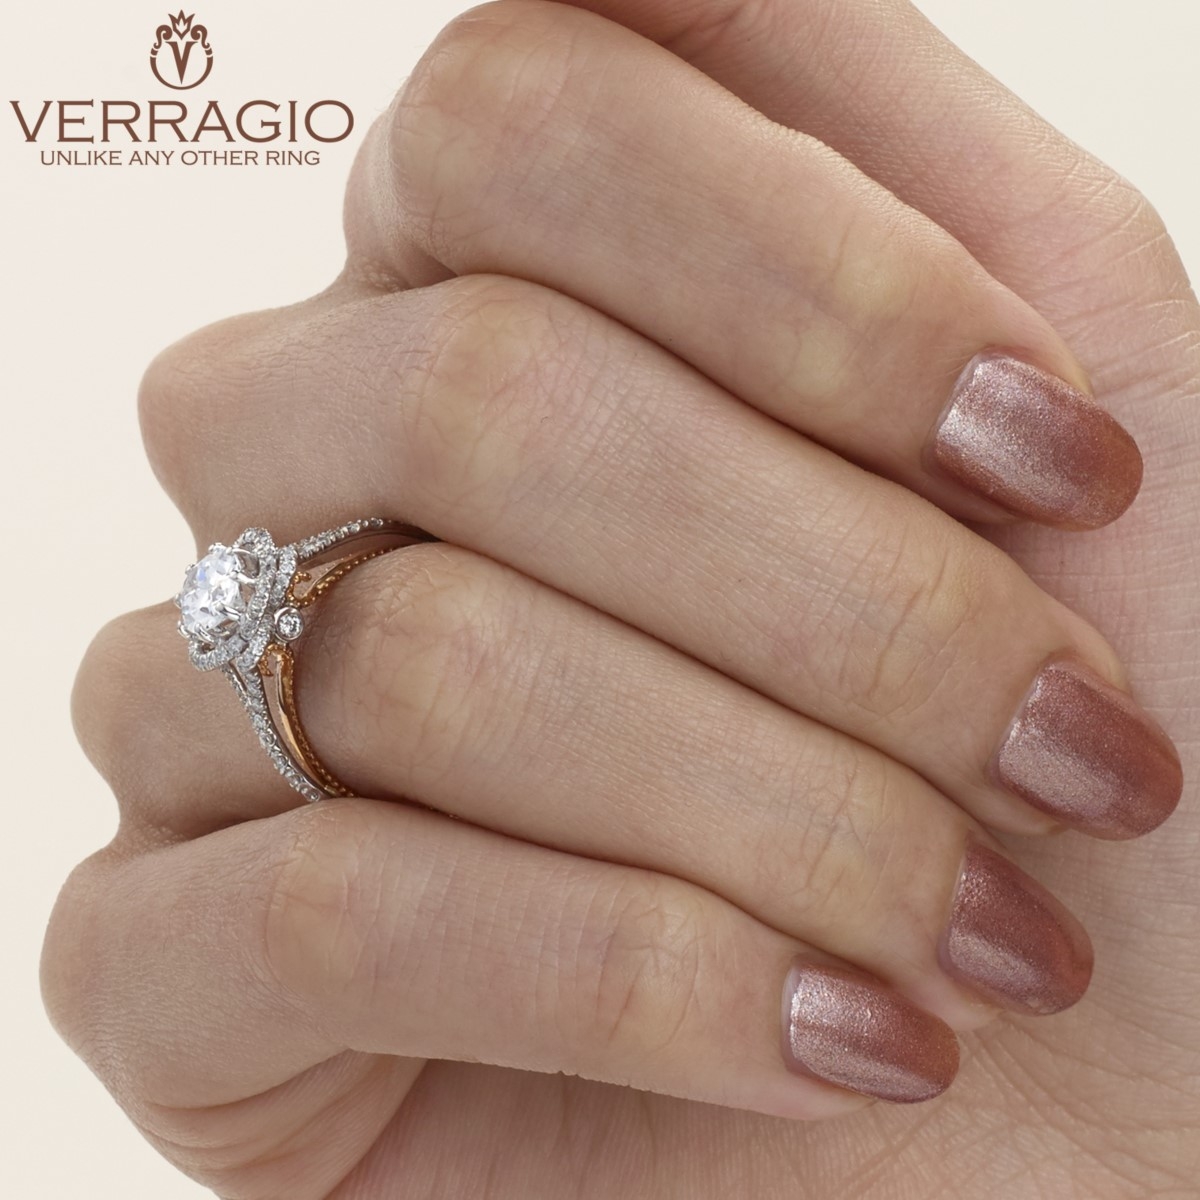 Verragio Couture-0426OV-TT 18 Karat Engagement Ring